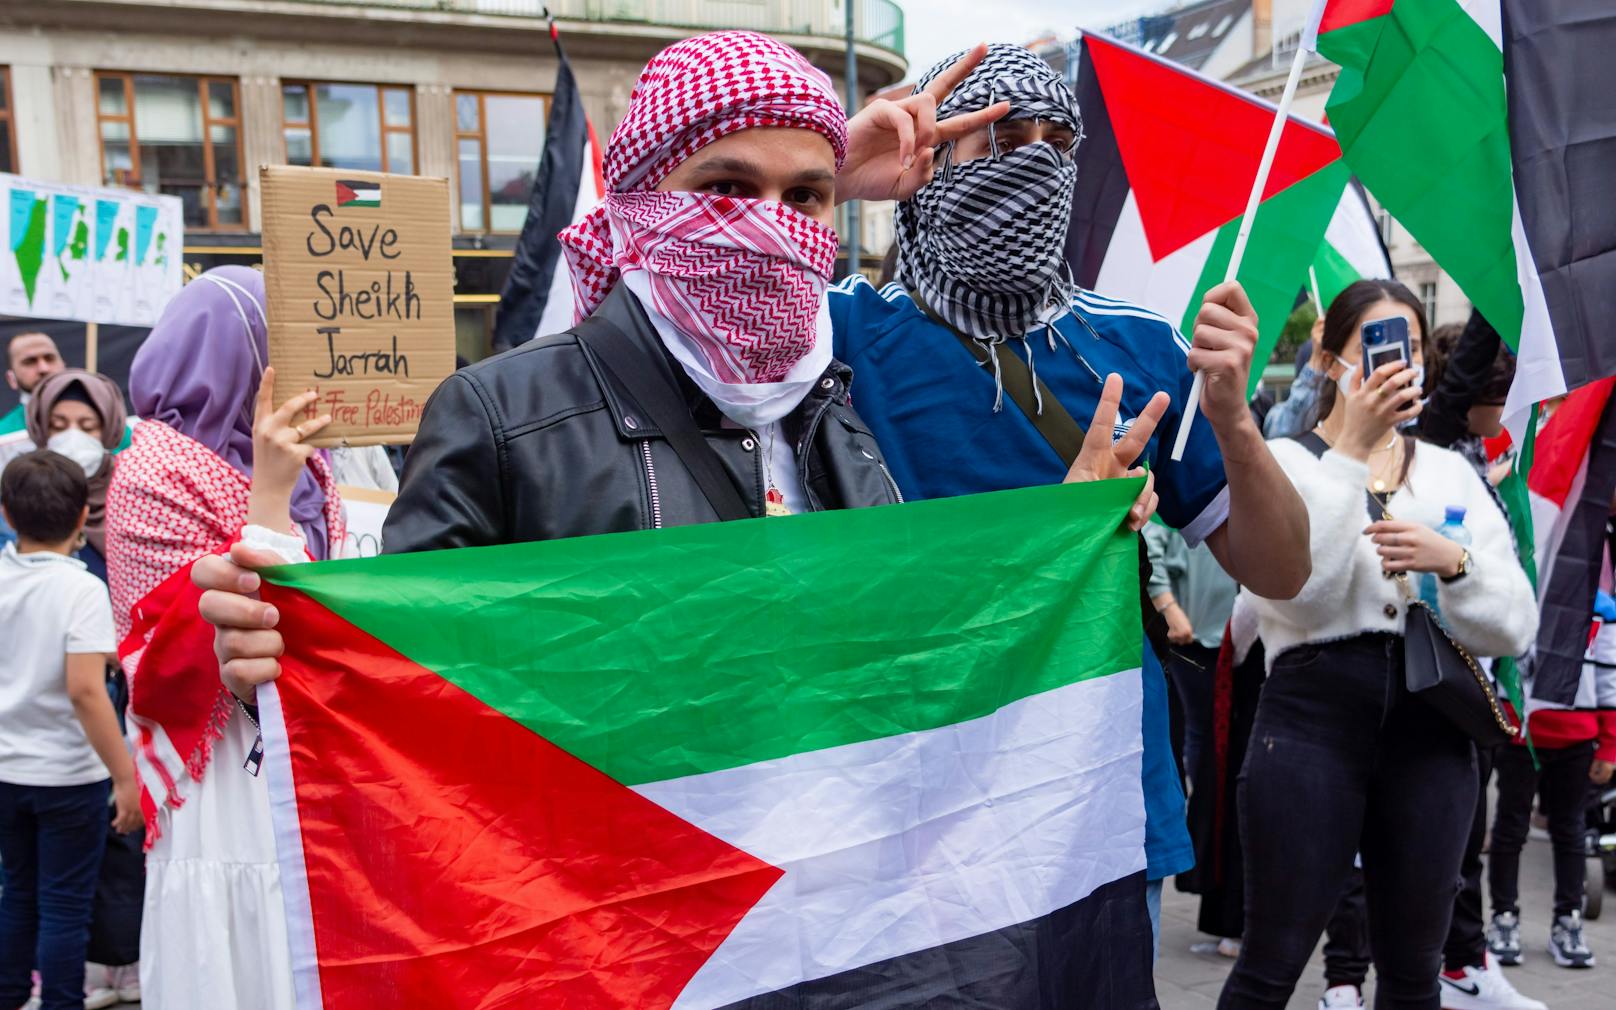 Archivfoto einer pro-Palästinenser-Demo in Wien.